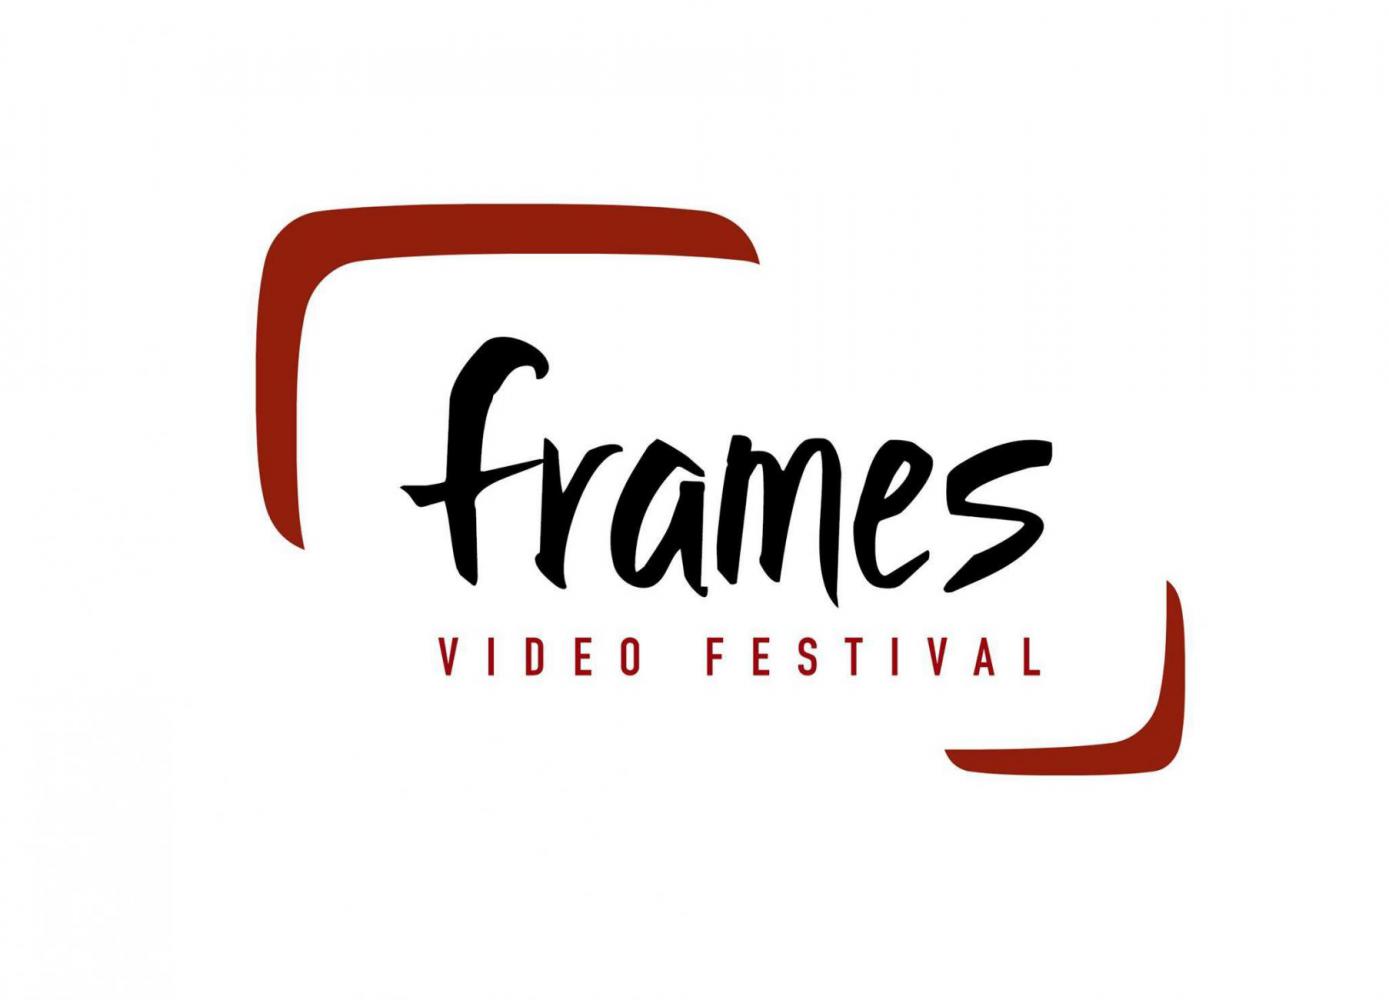 FRAMES Video Festival